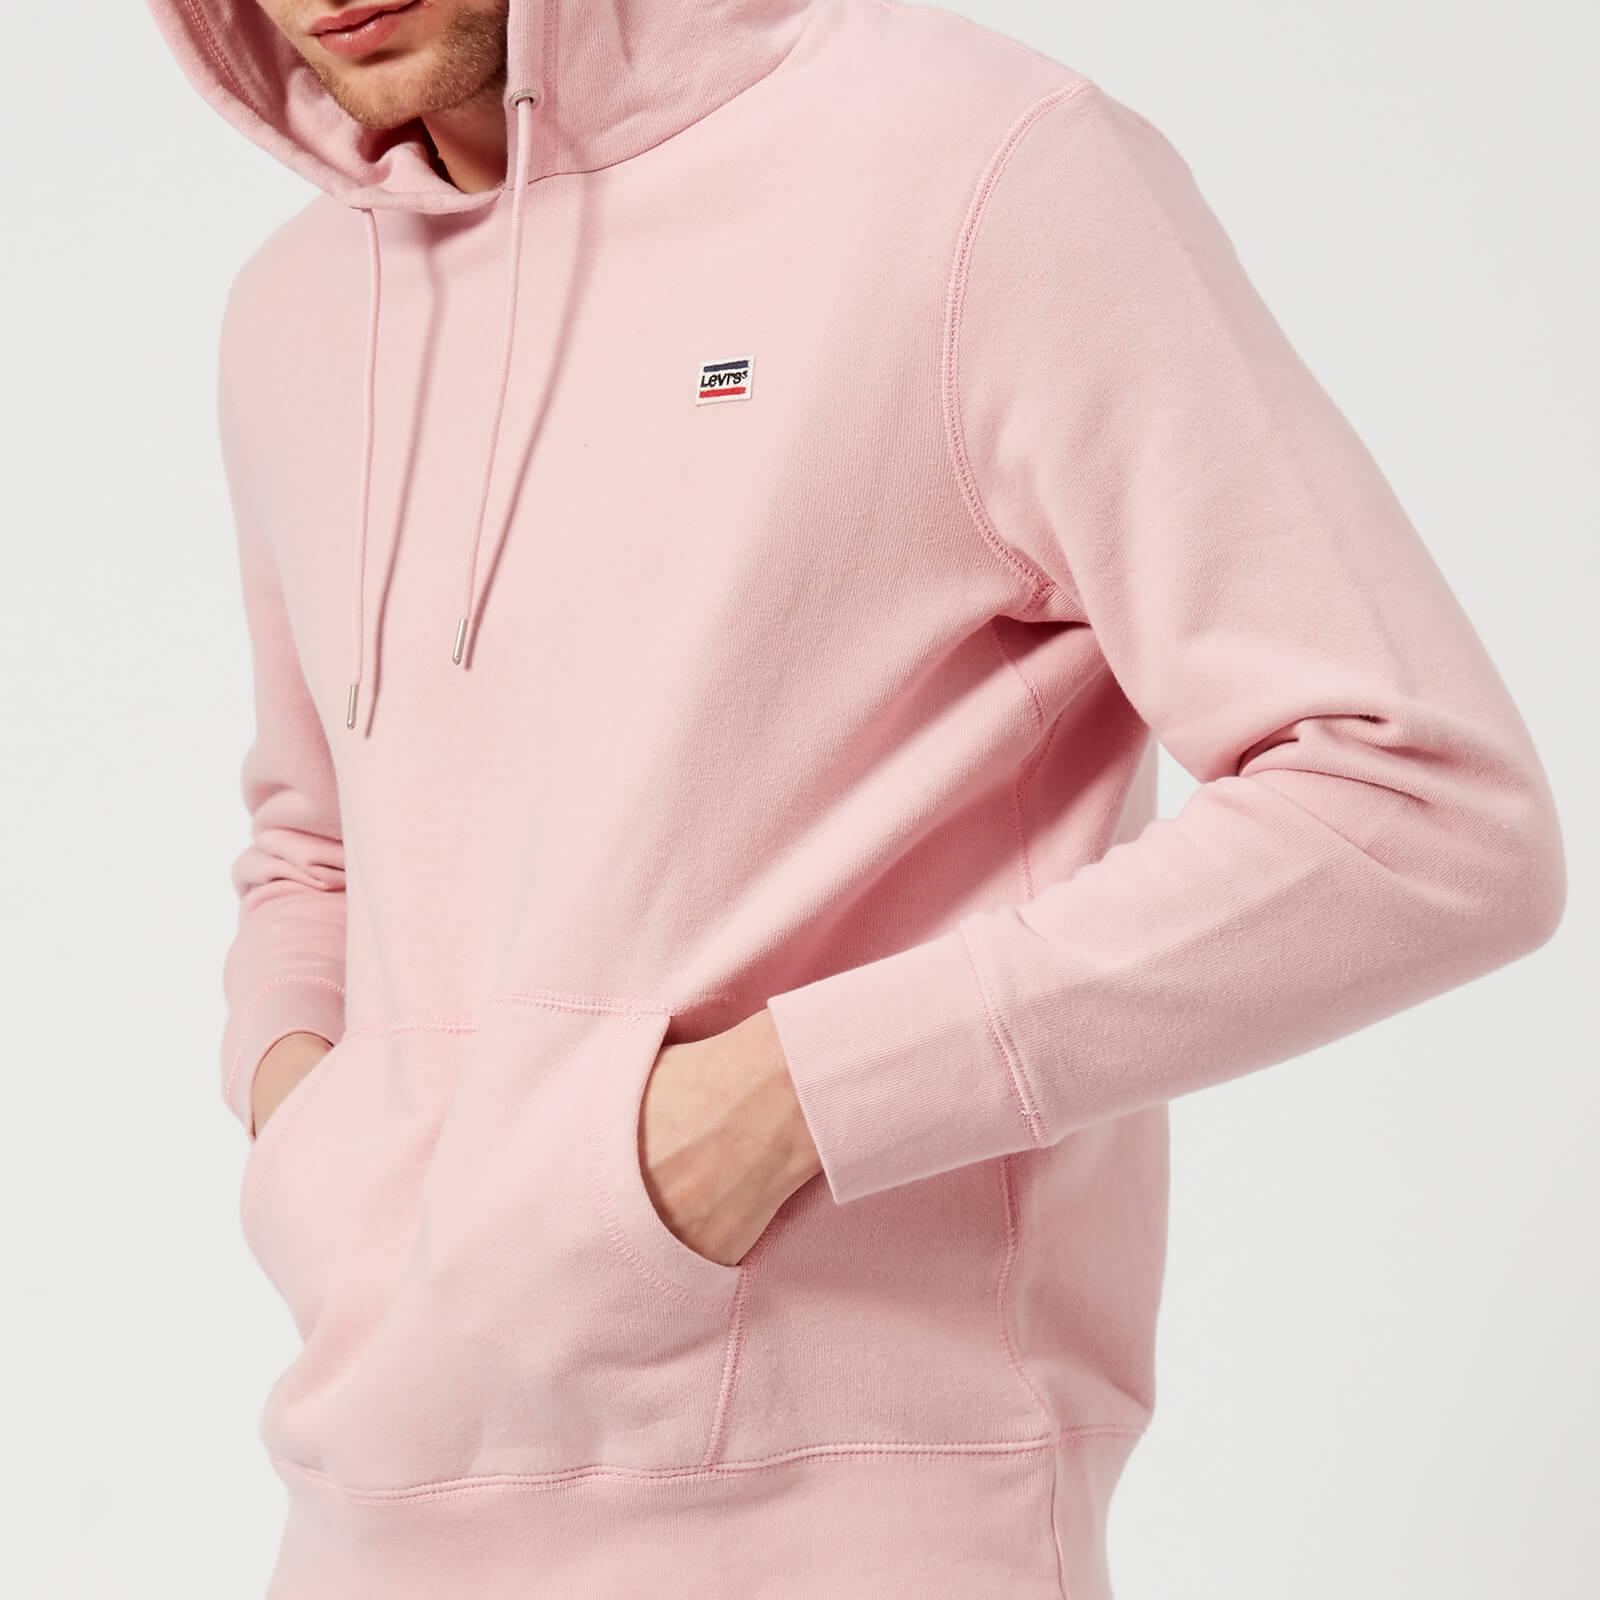 levis hoodie women's pink